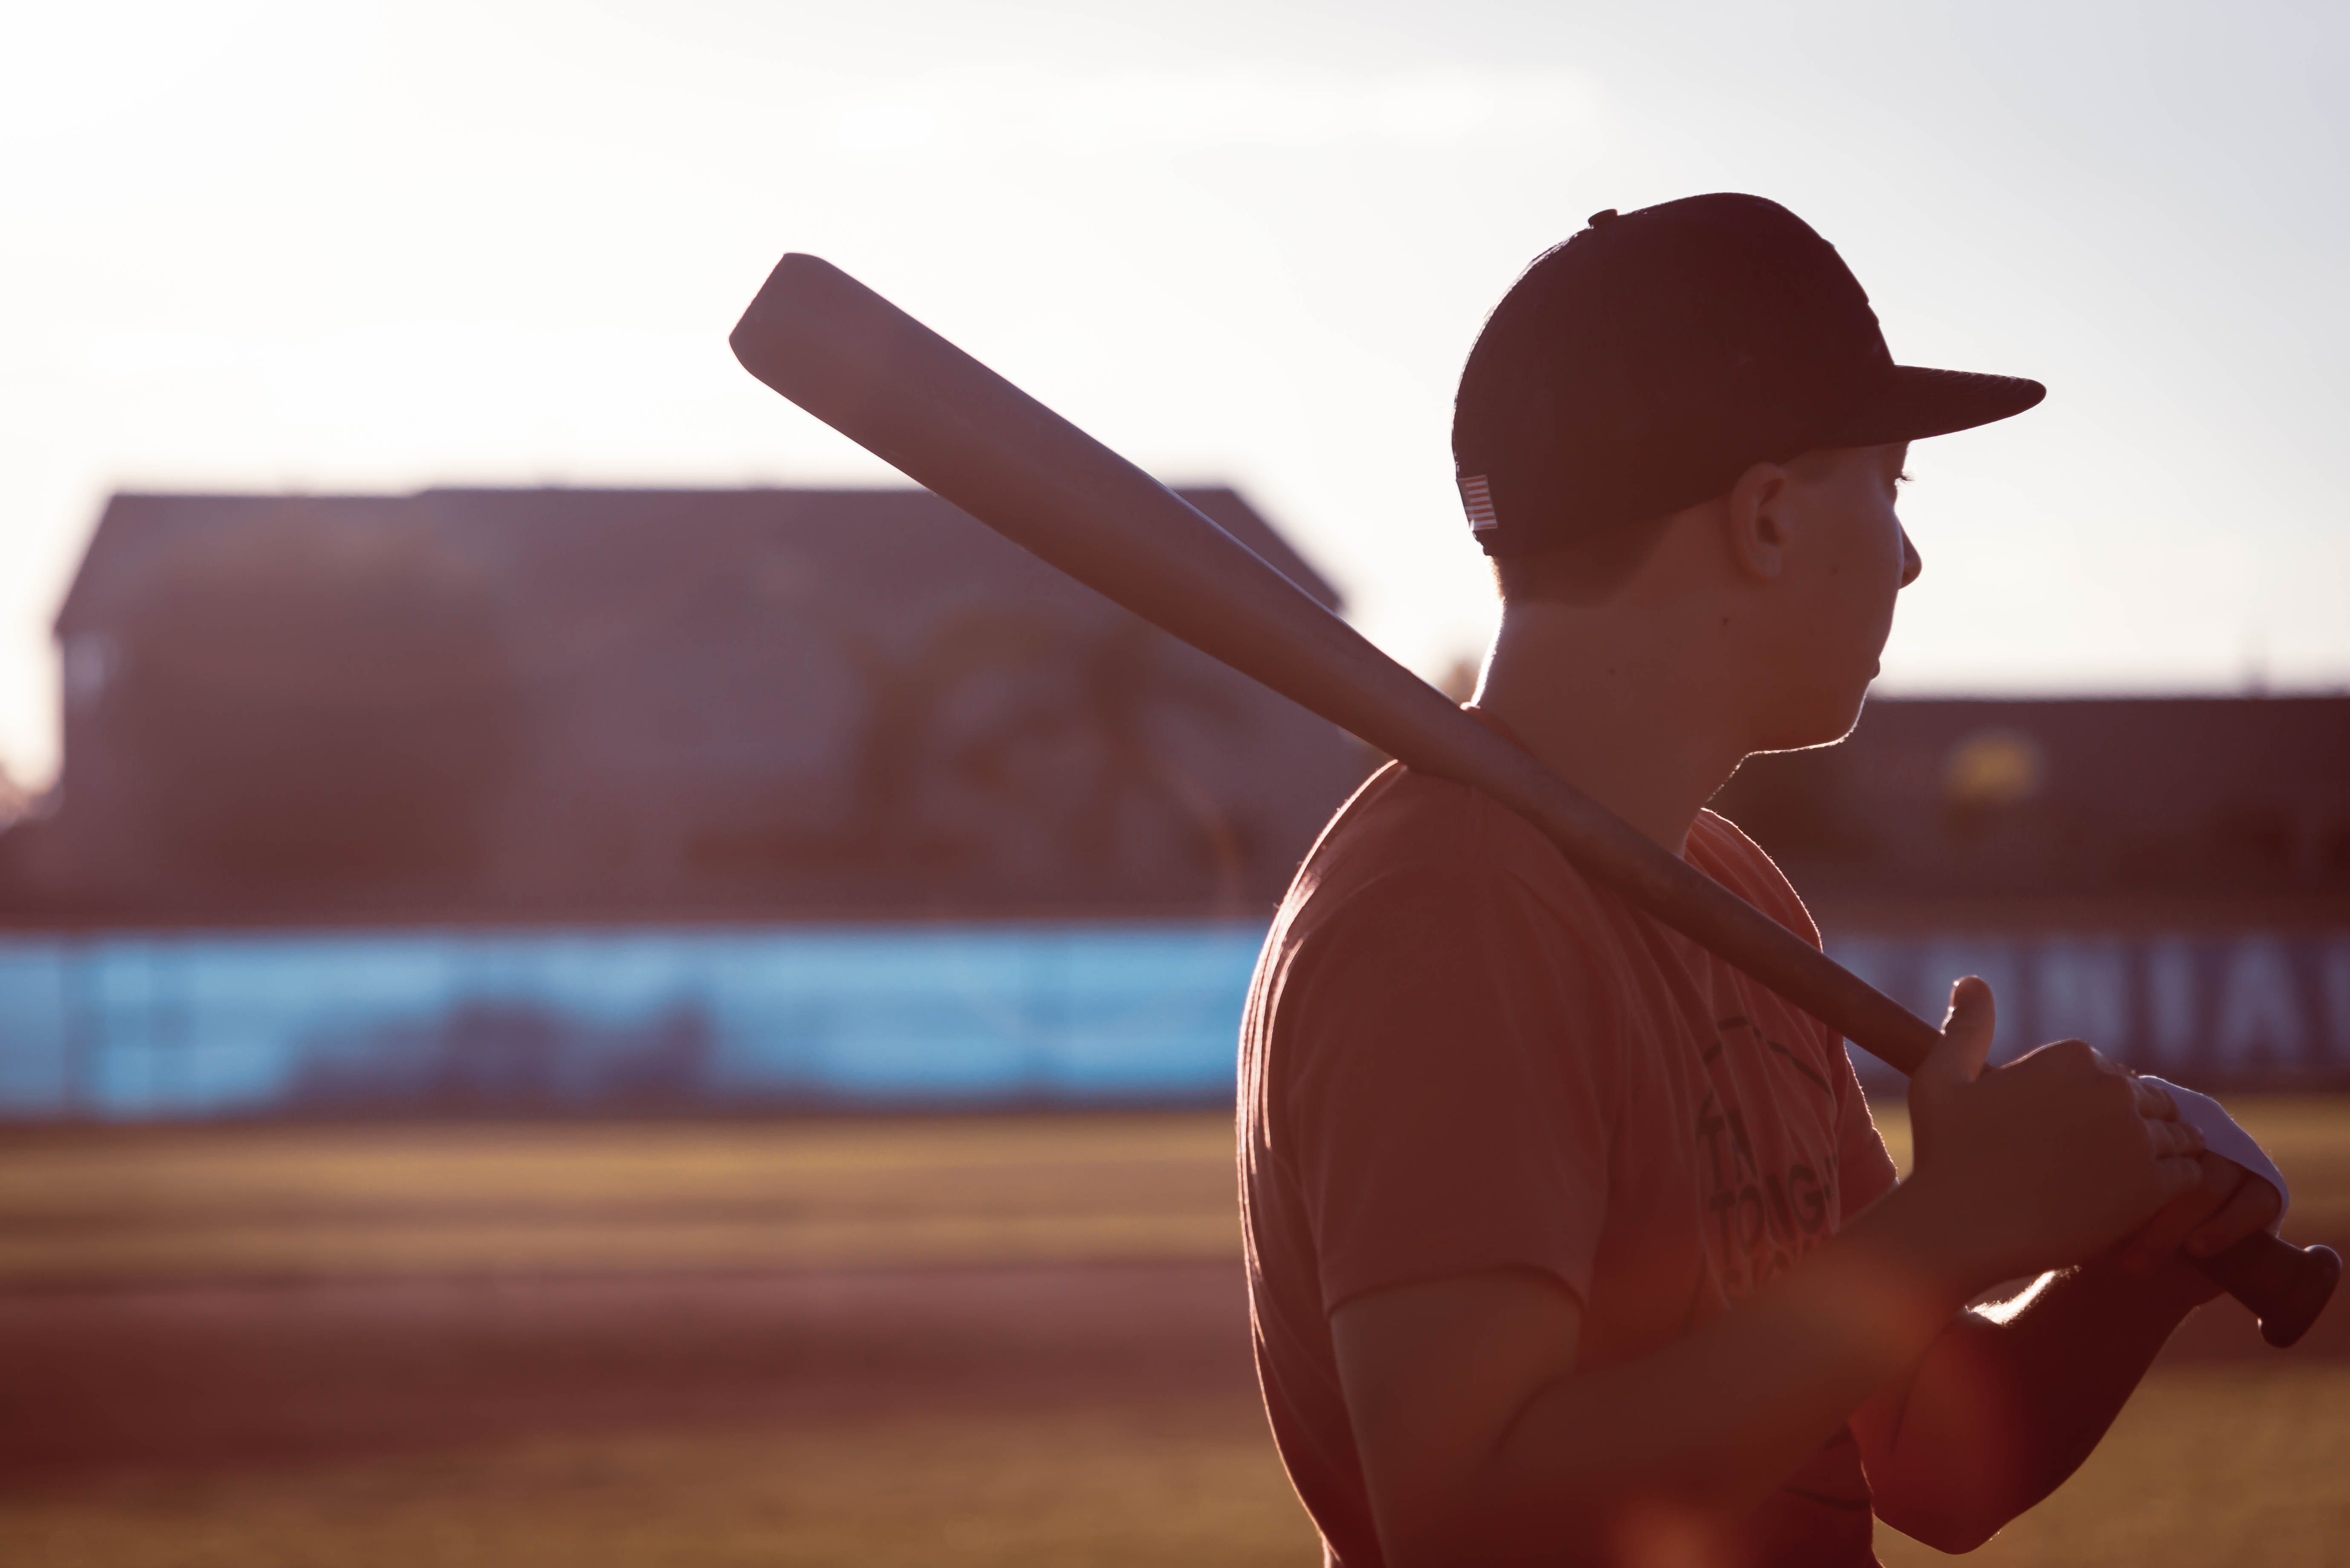 Patrick sah den Vater und den Sohn Baseball spielen, was ihn traurig machte, weil er diesen Sport früher mit seinem Vater gespielt hatte. | Quelle: Pexels